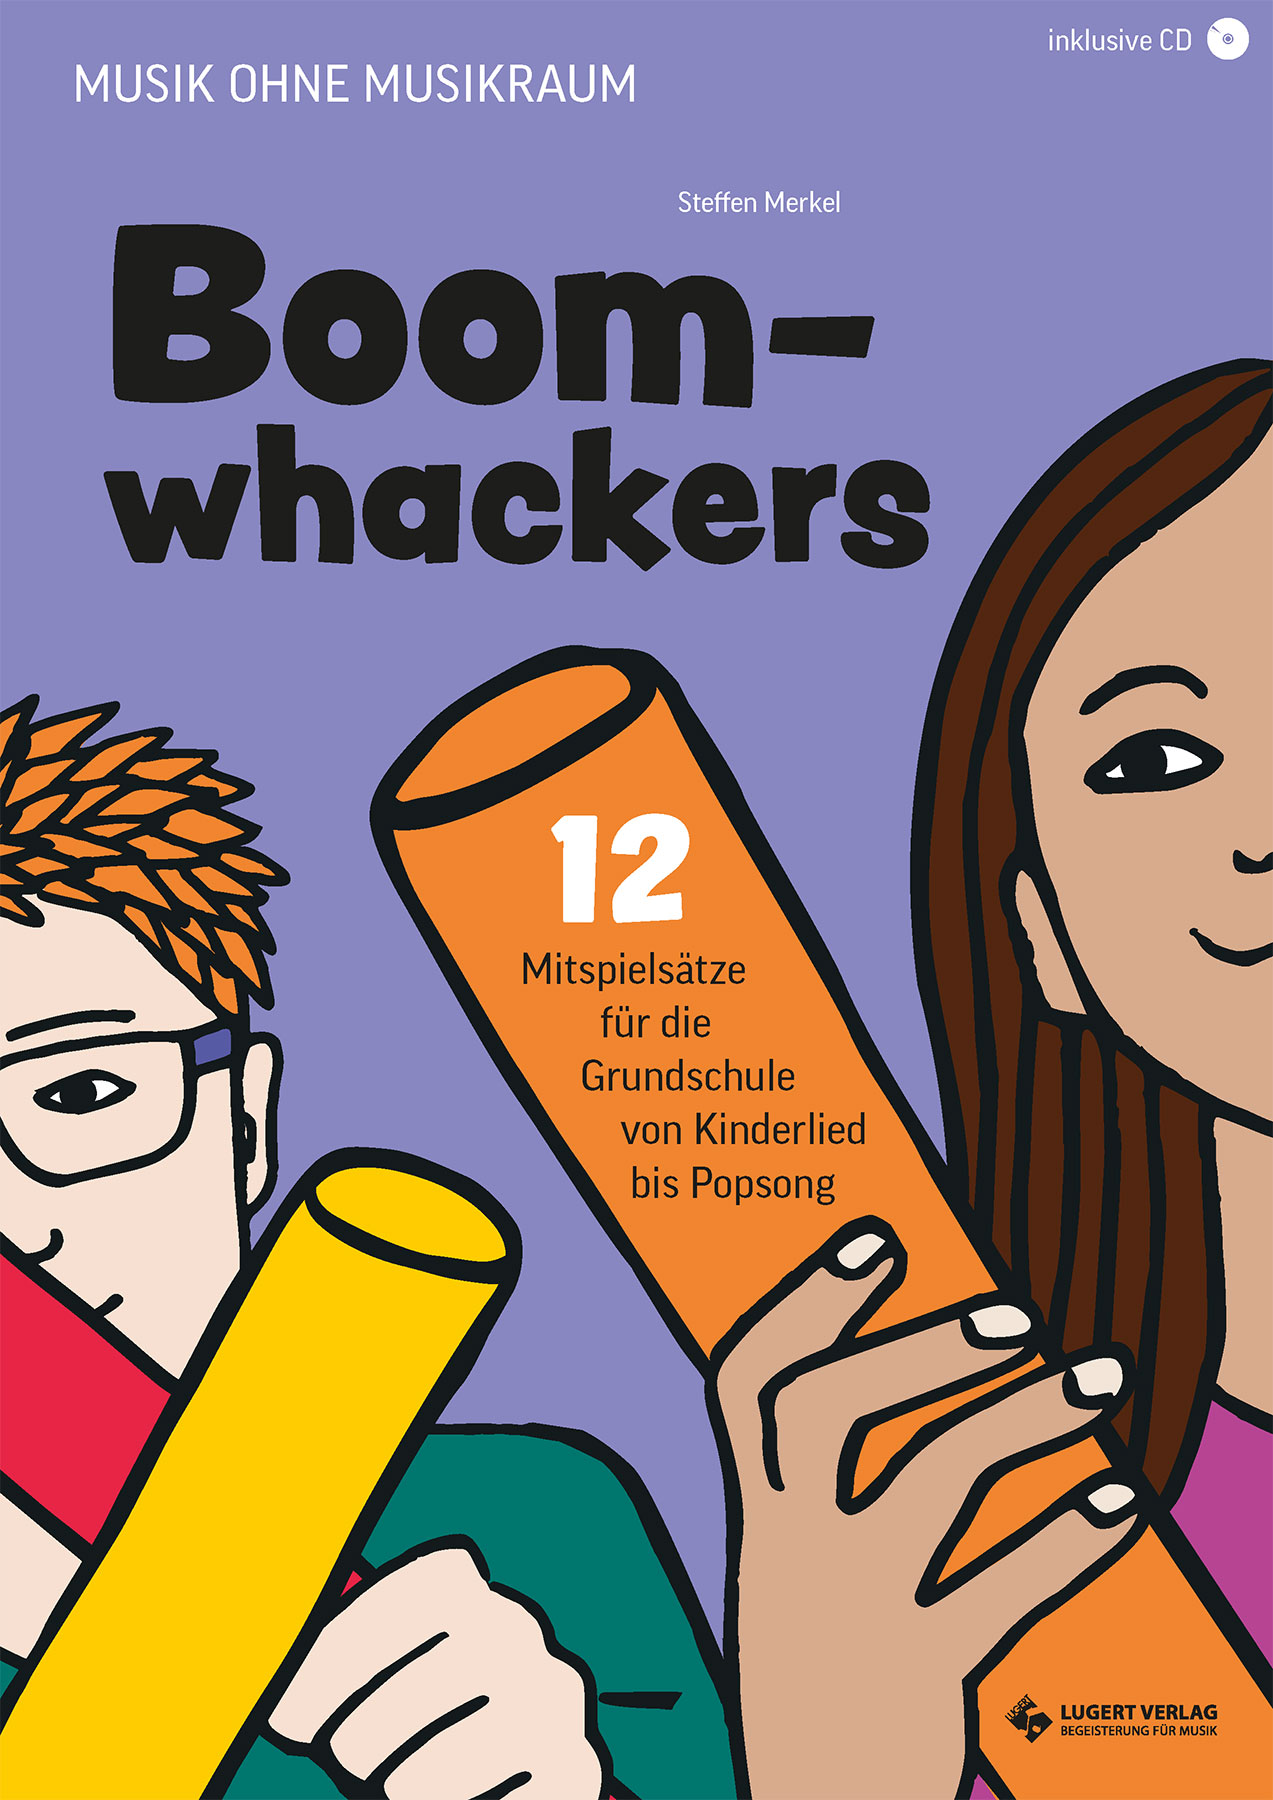 Boomwhackers - 12 Mitspielsätze für die Grundschule 3